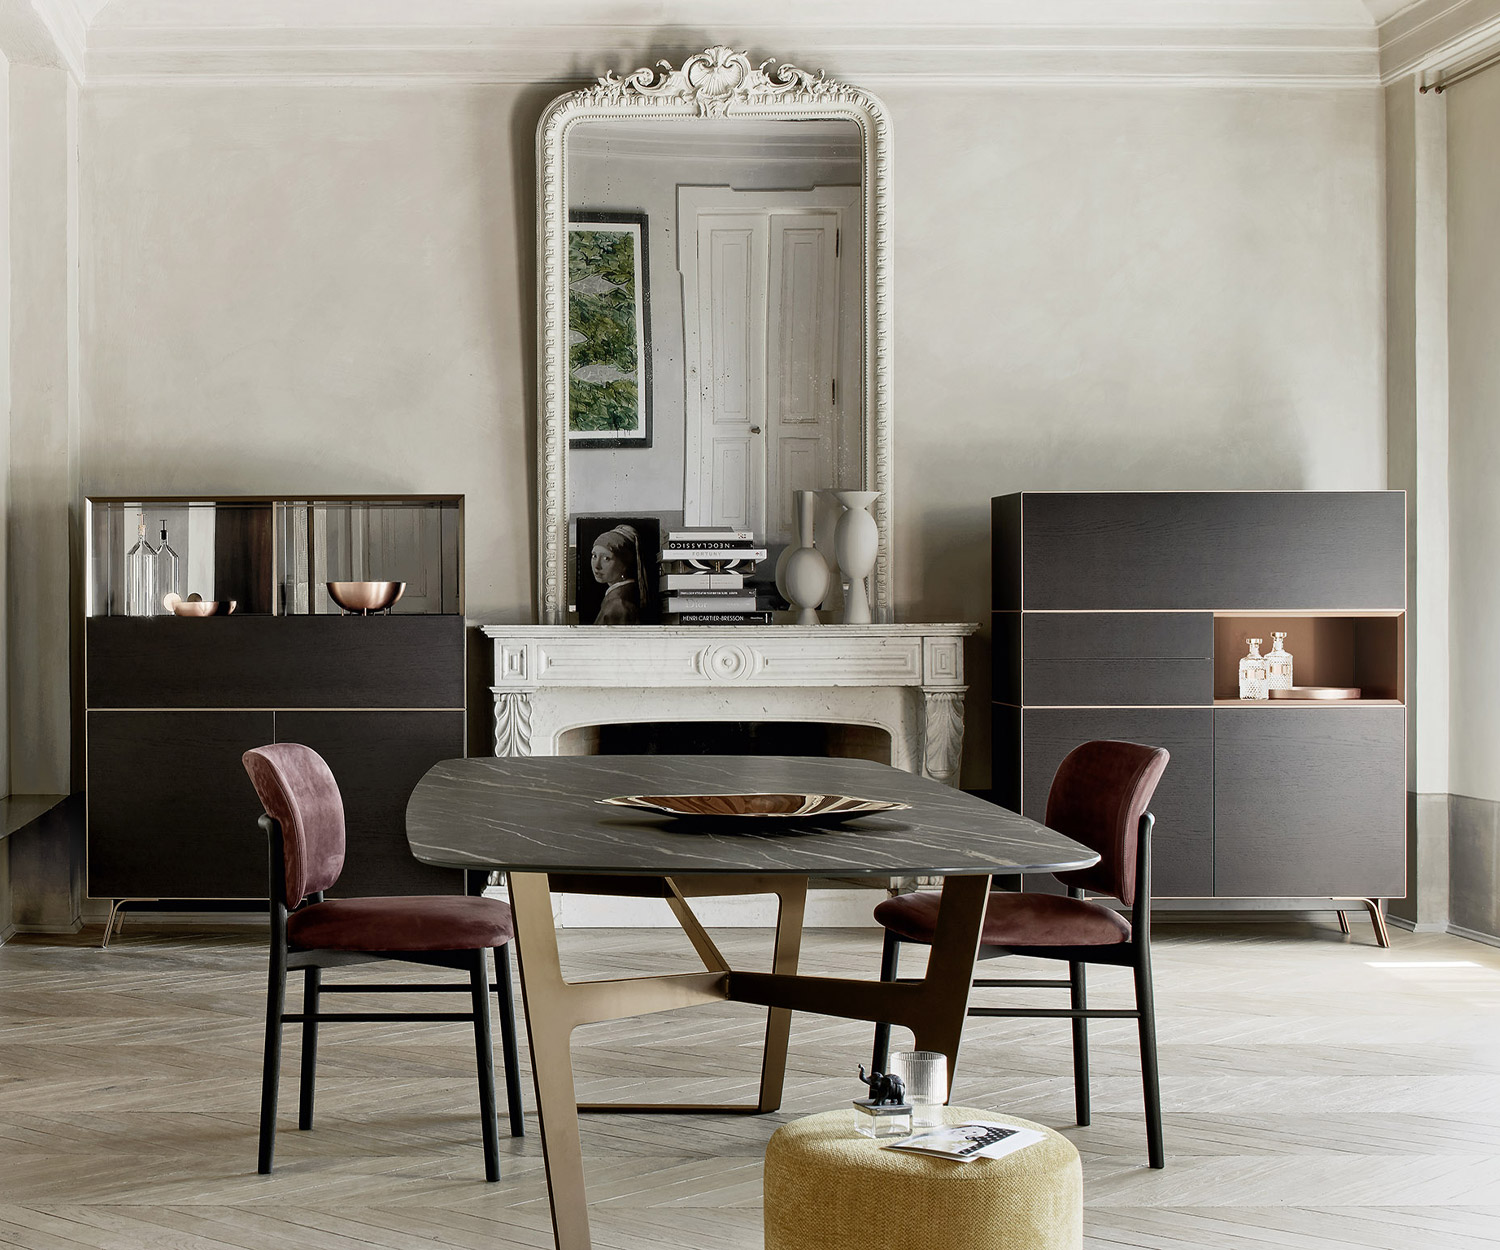 Keramik Tischplatte in Schwarz Obi Esstisch Livitalia im Esszimmer von der Seite mit Stühlen